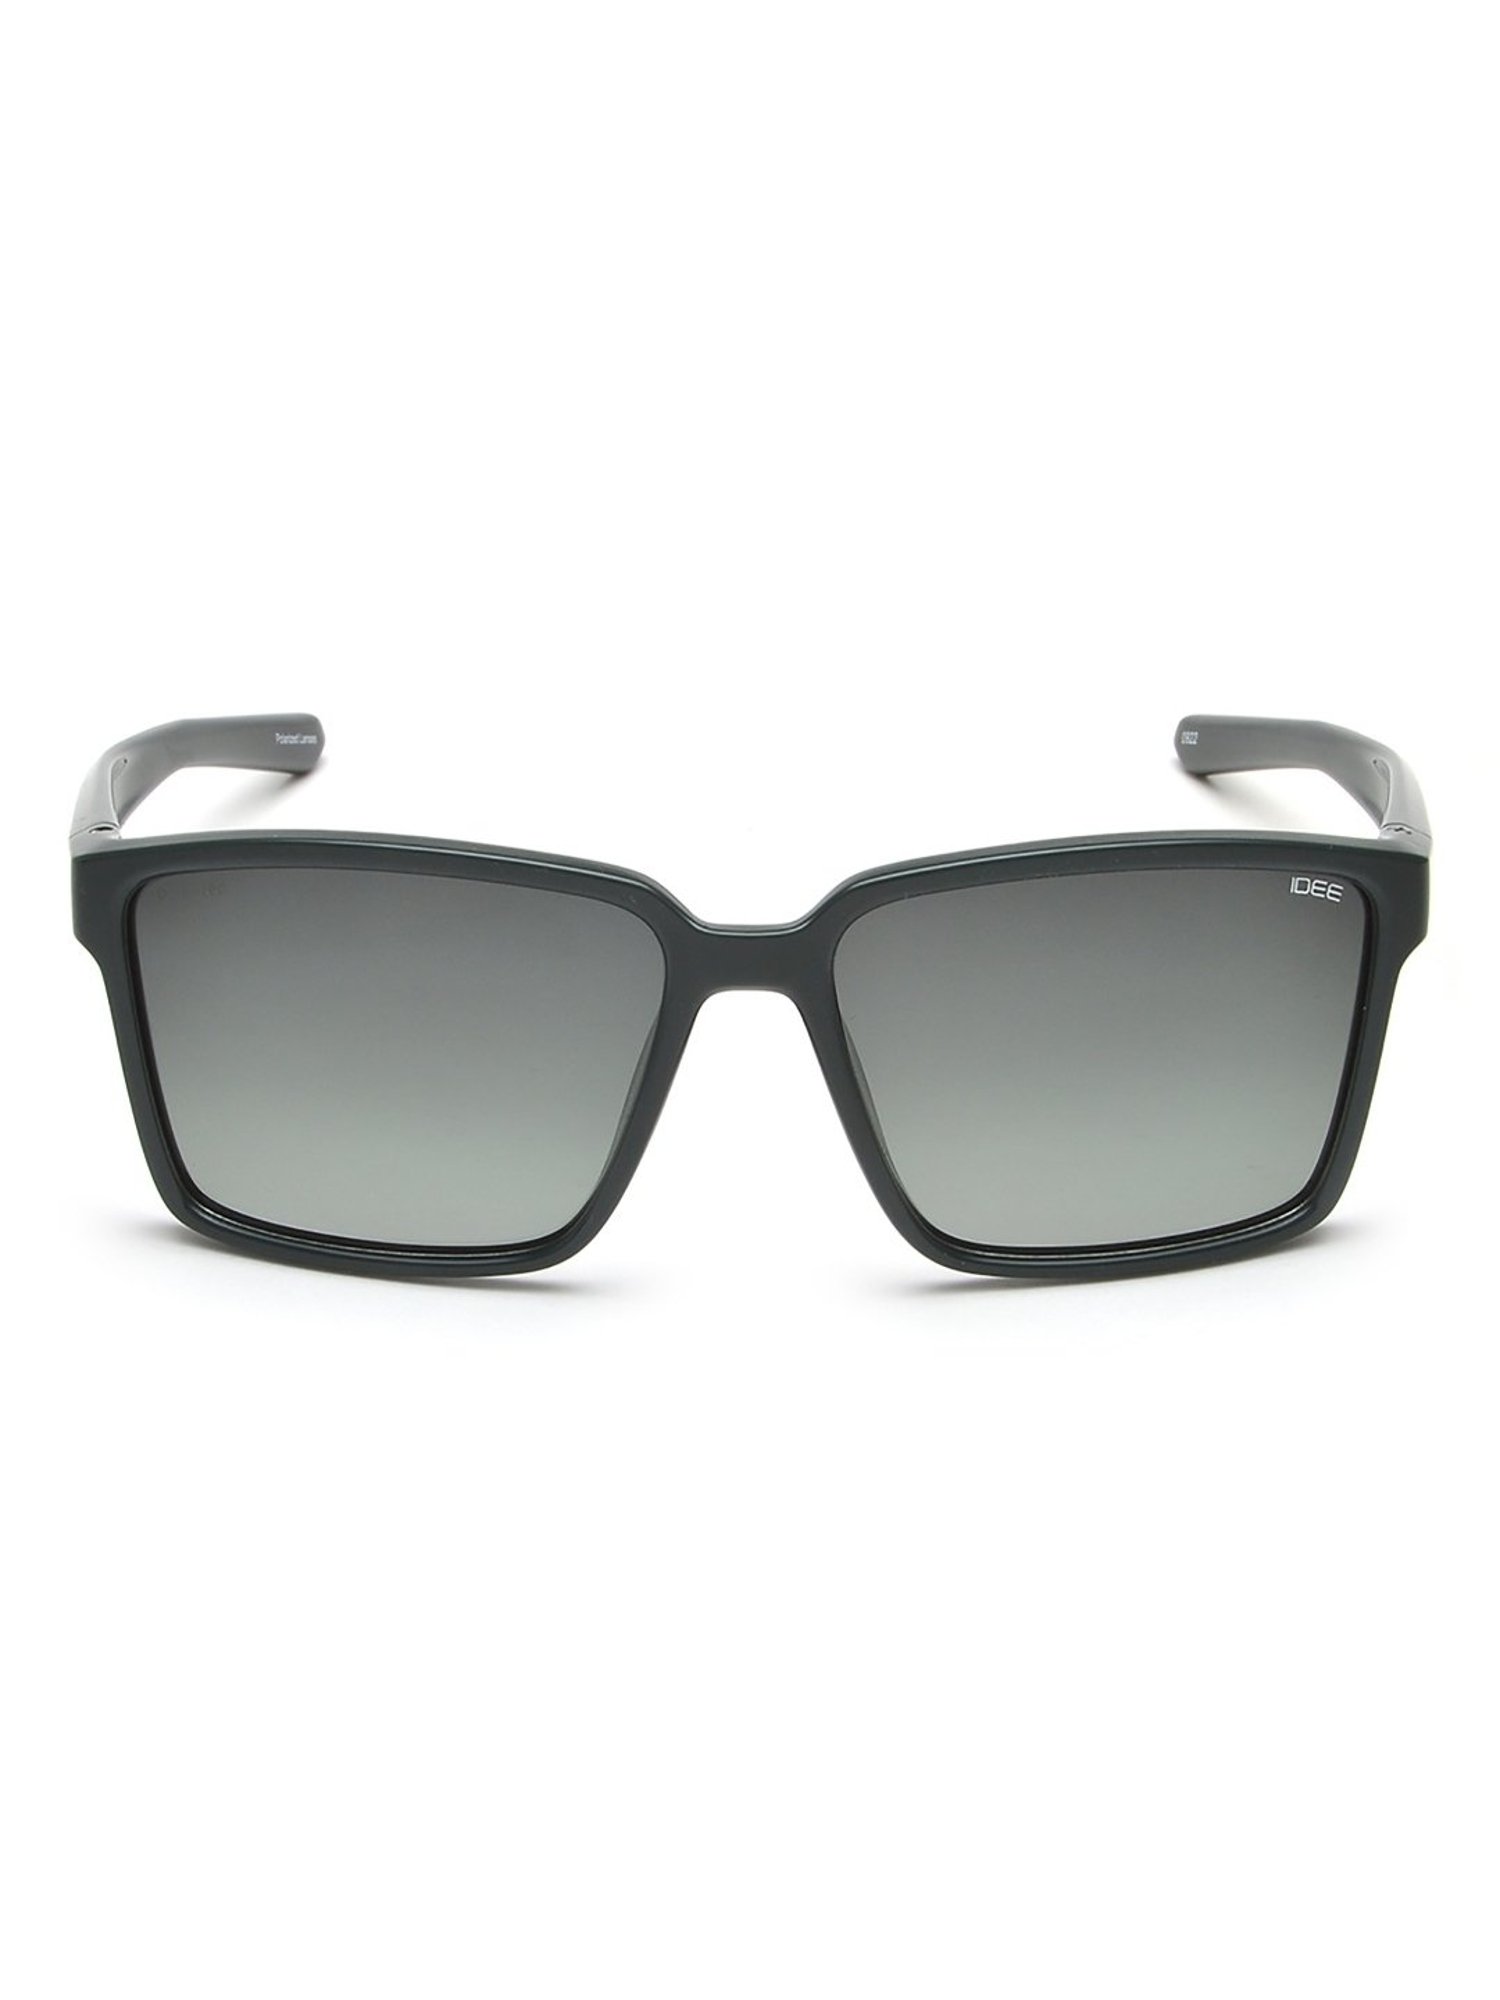 IDEE Green Square Sunglasses for Men